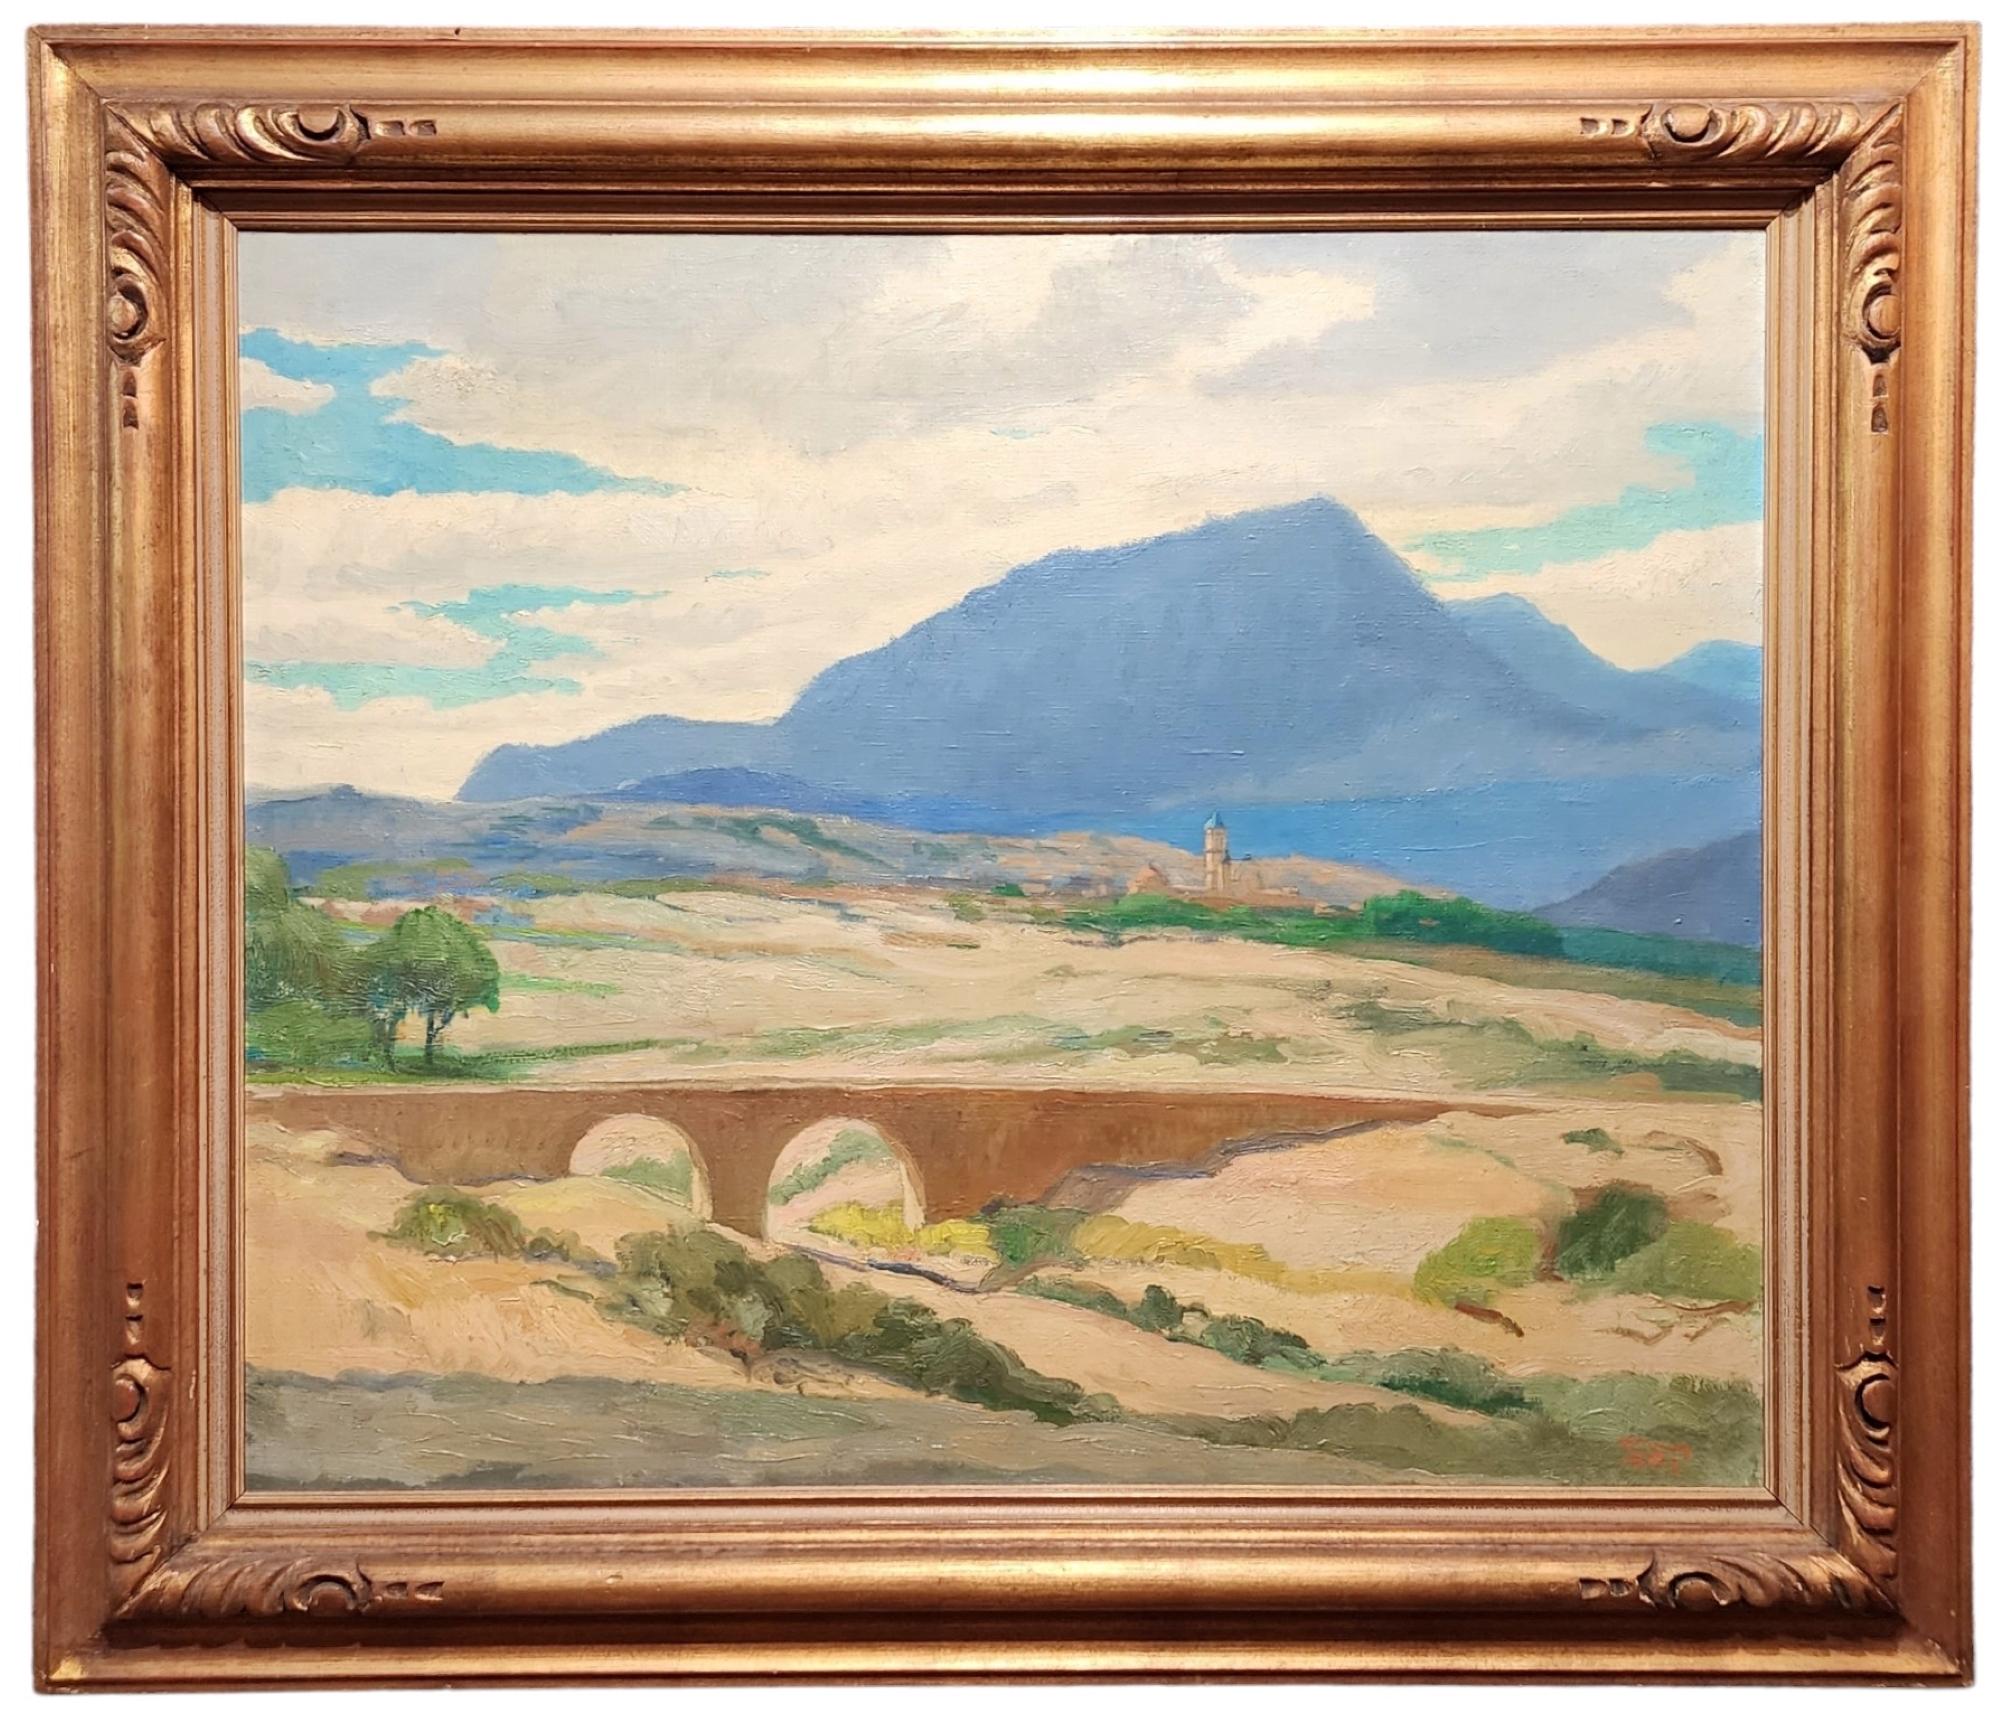 Charles McLaughlin Landscape Painting - Auqaduct e Saltillo, Mexico, Impressionist Landscape, Rookwood